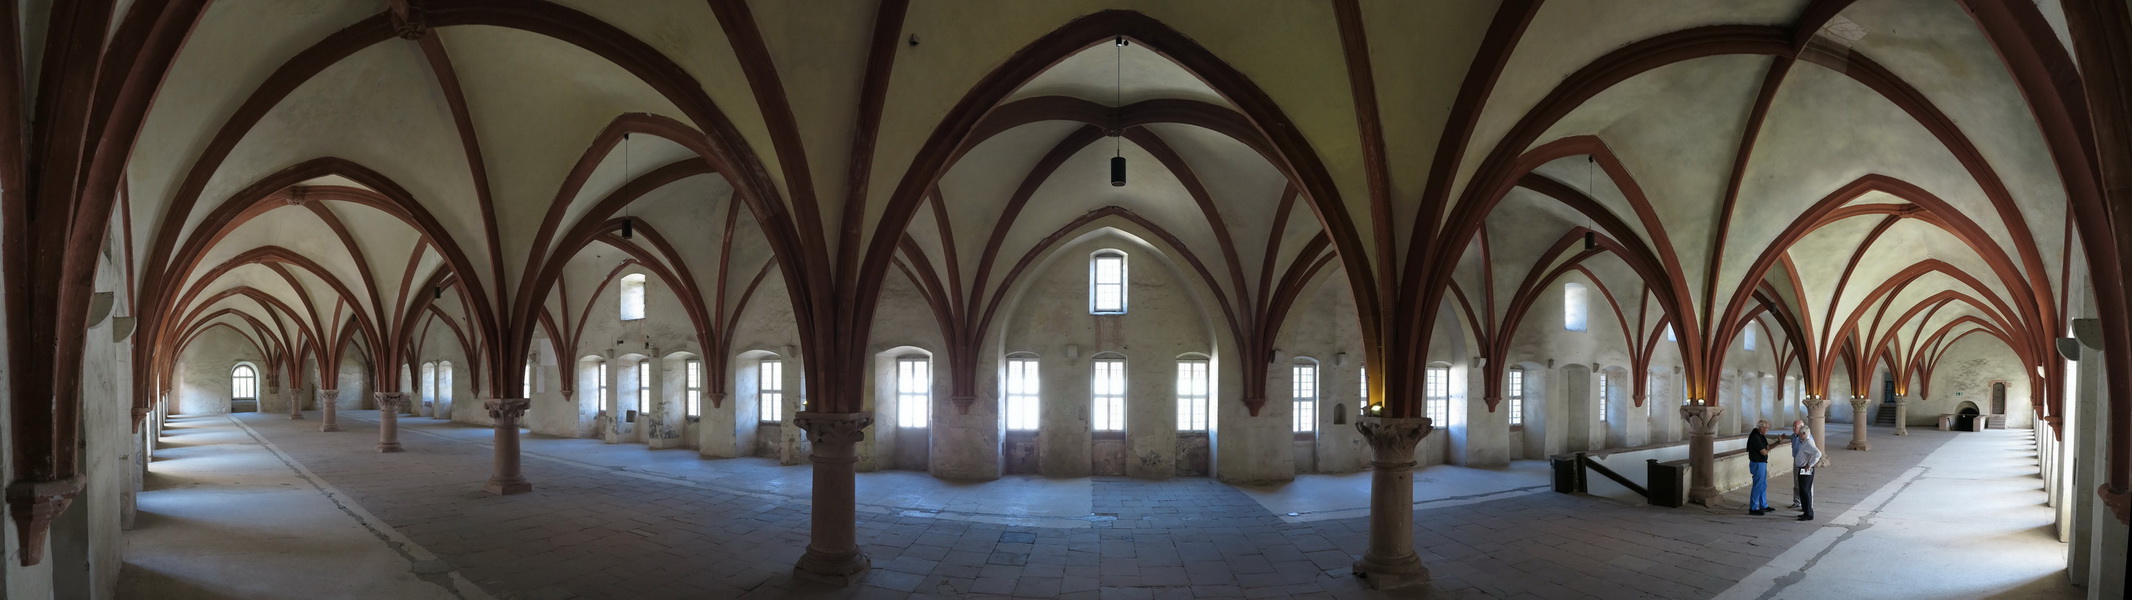 Säulenhalle im Kloster Eberbach